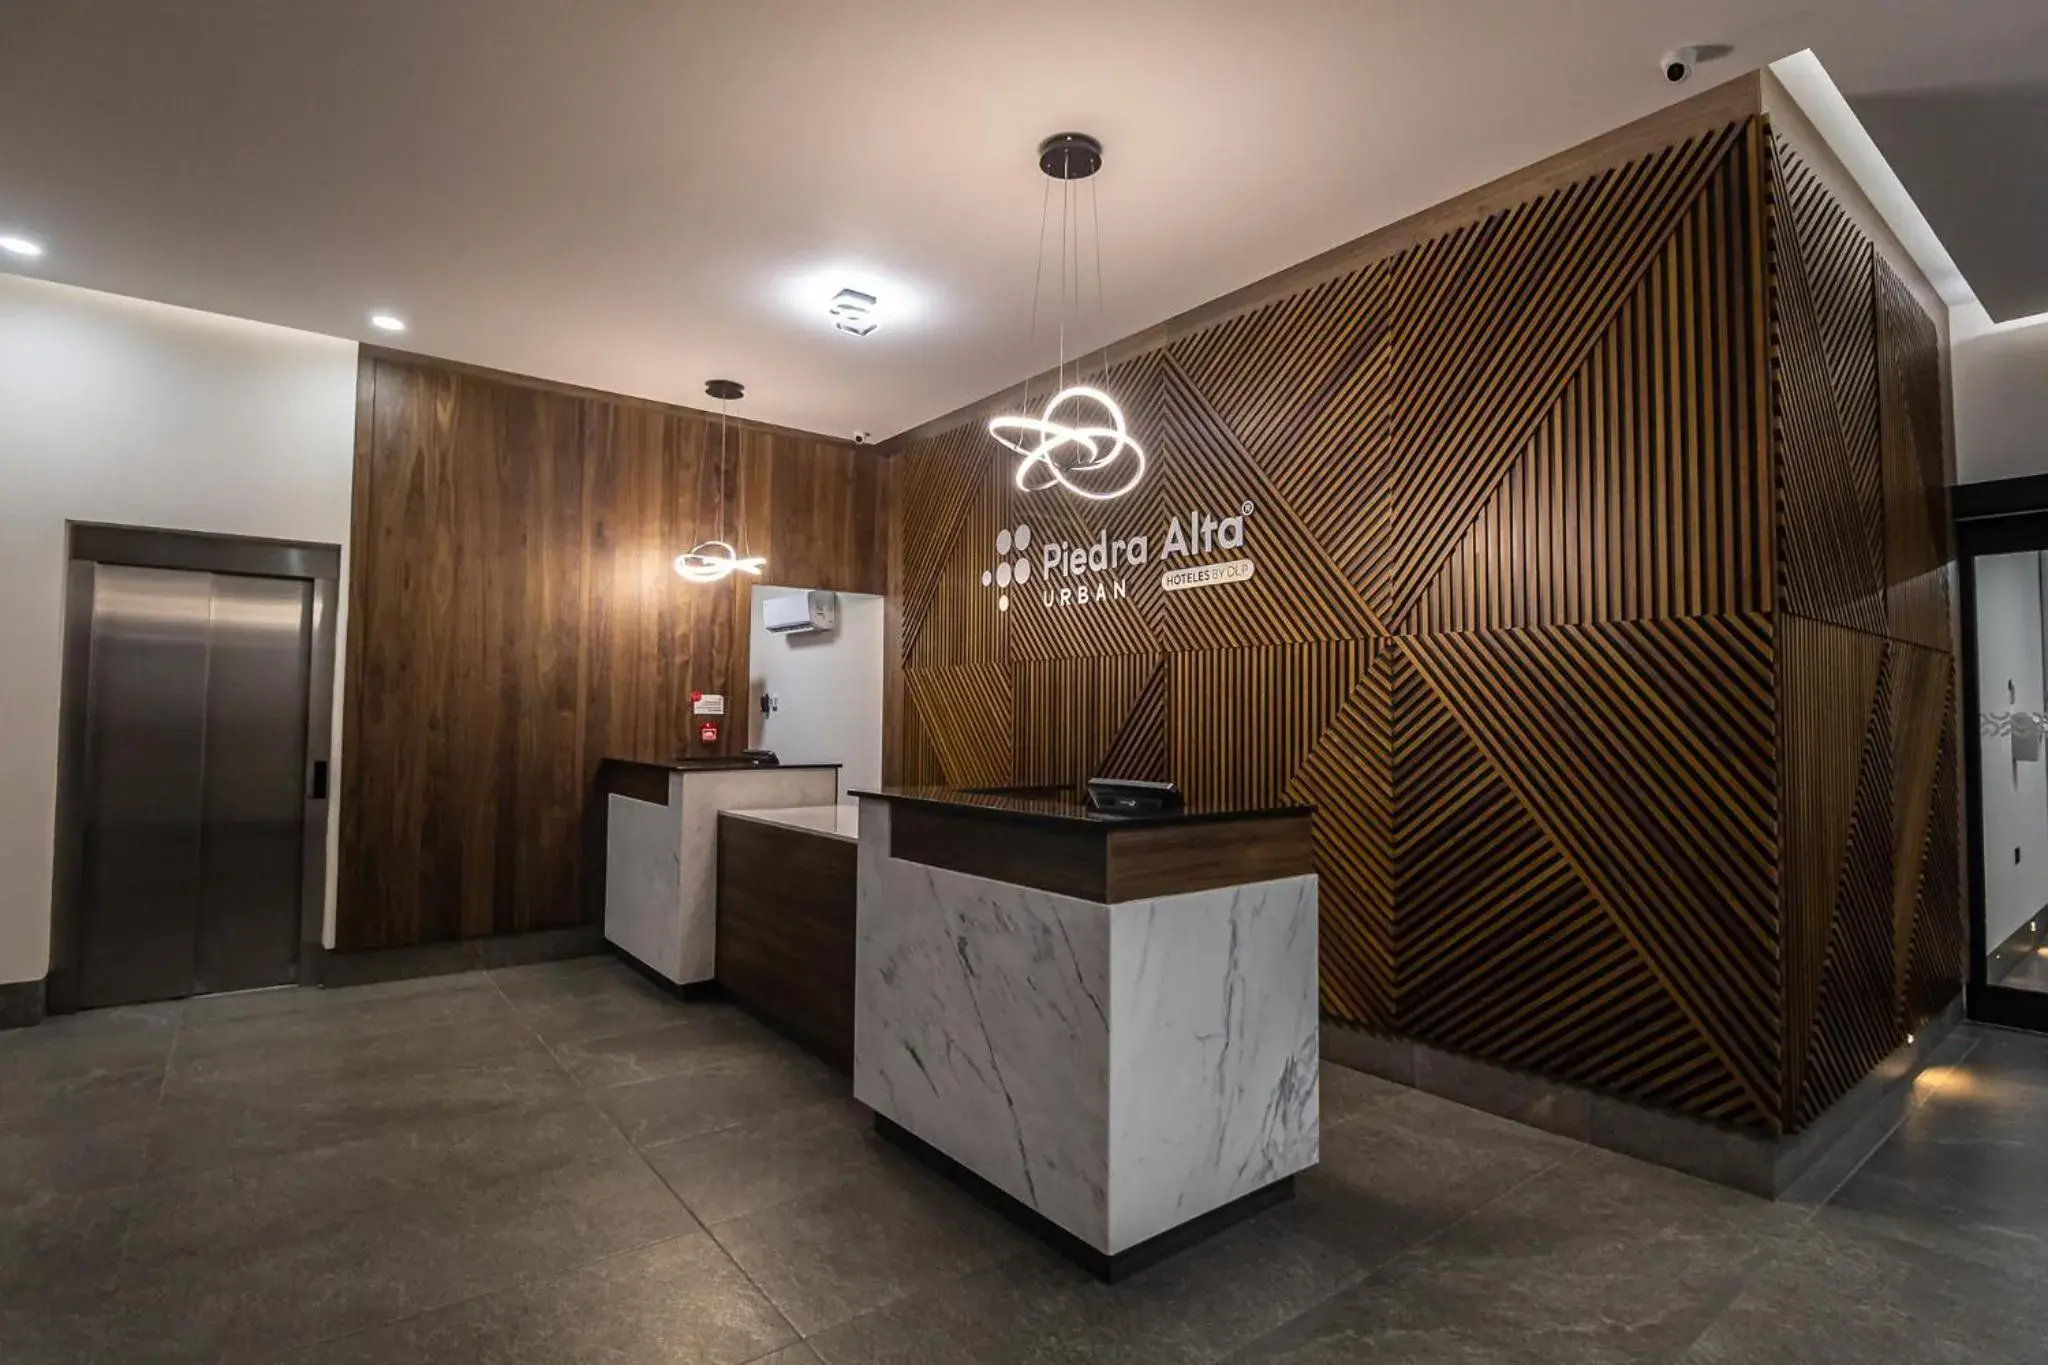 Lobby or reception, Lobby/Reception in Hoteles Piedra Alta by De Los Perez